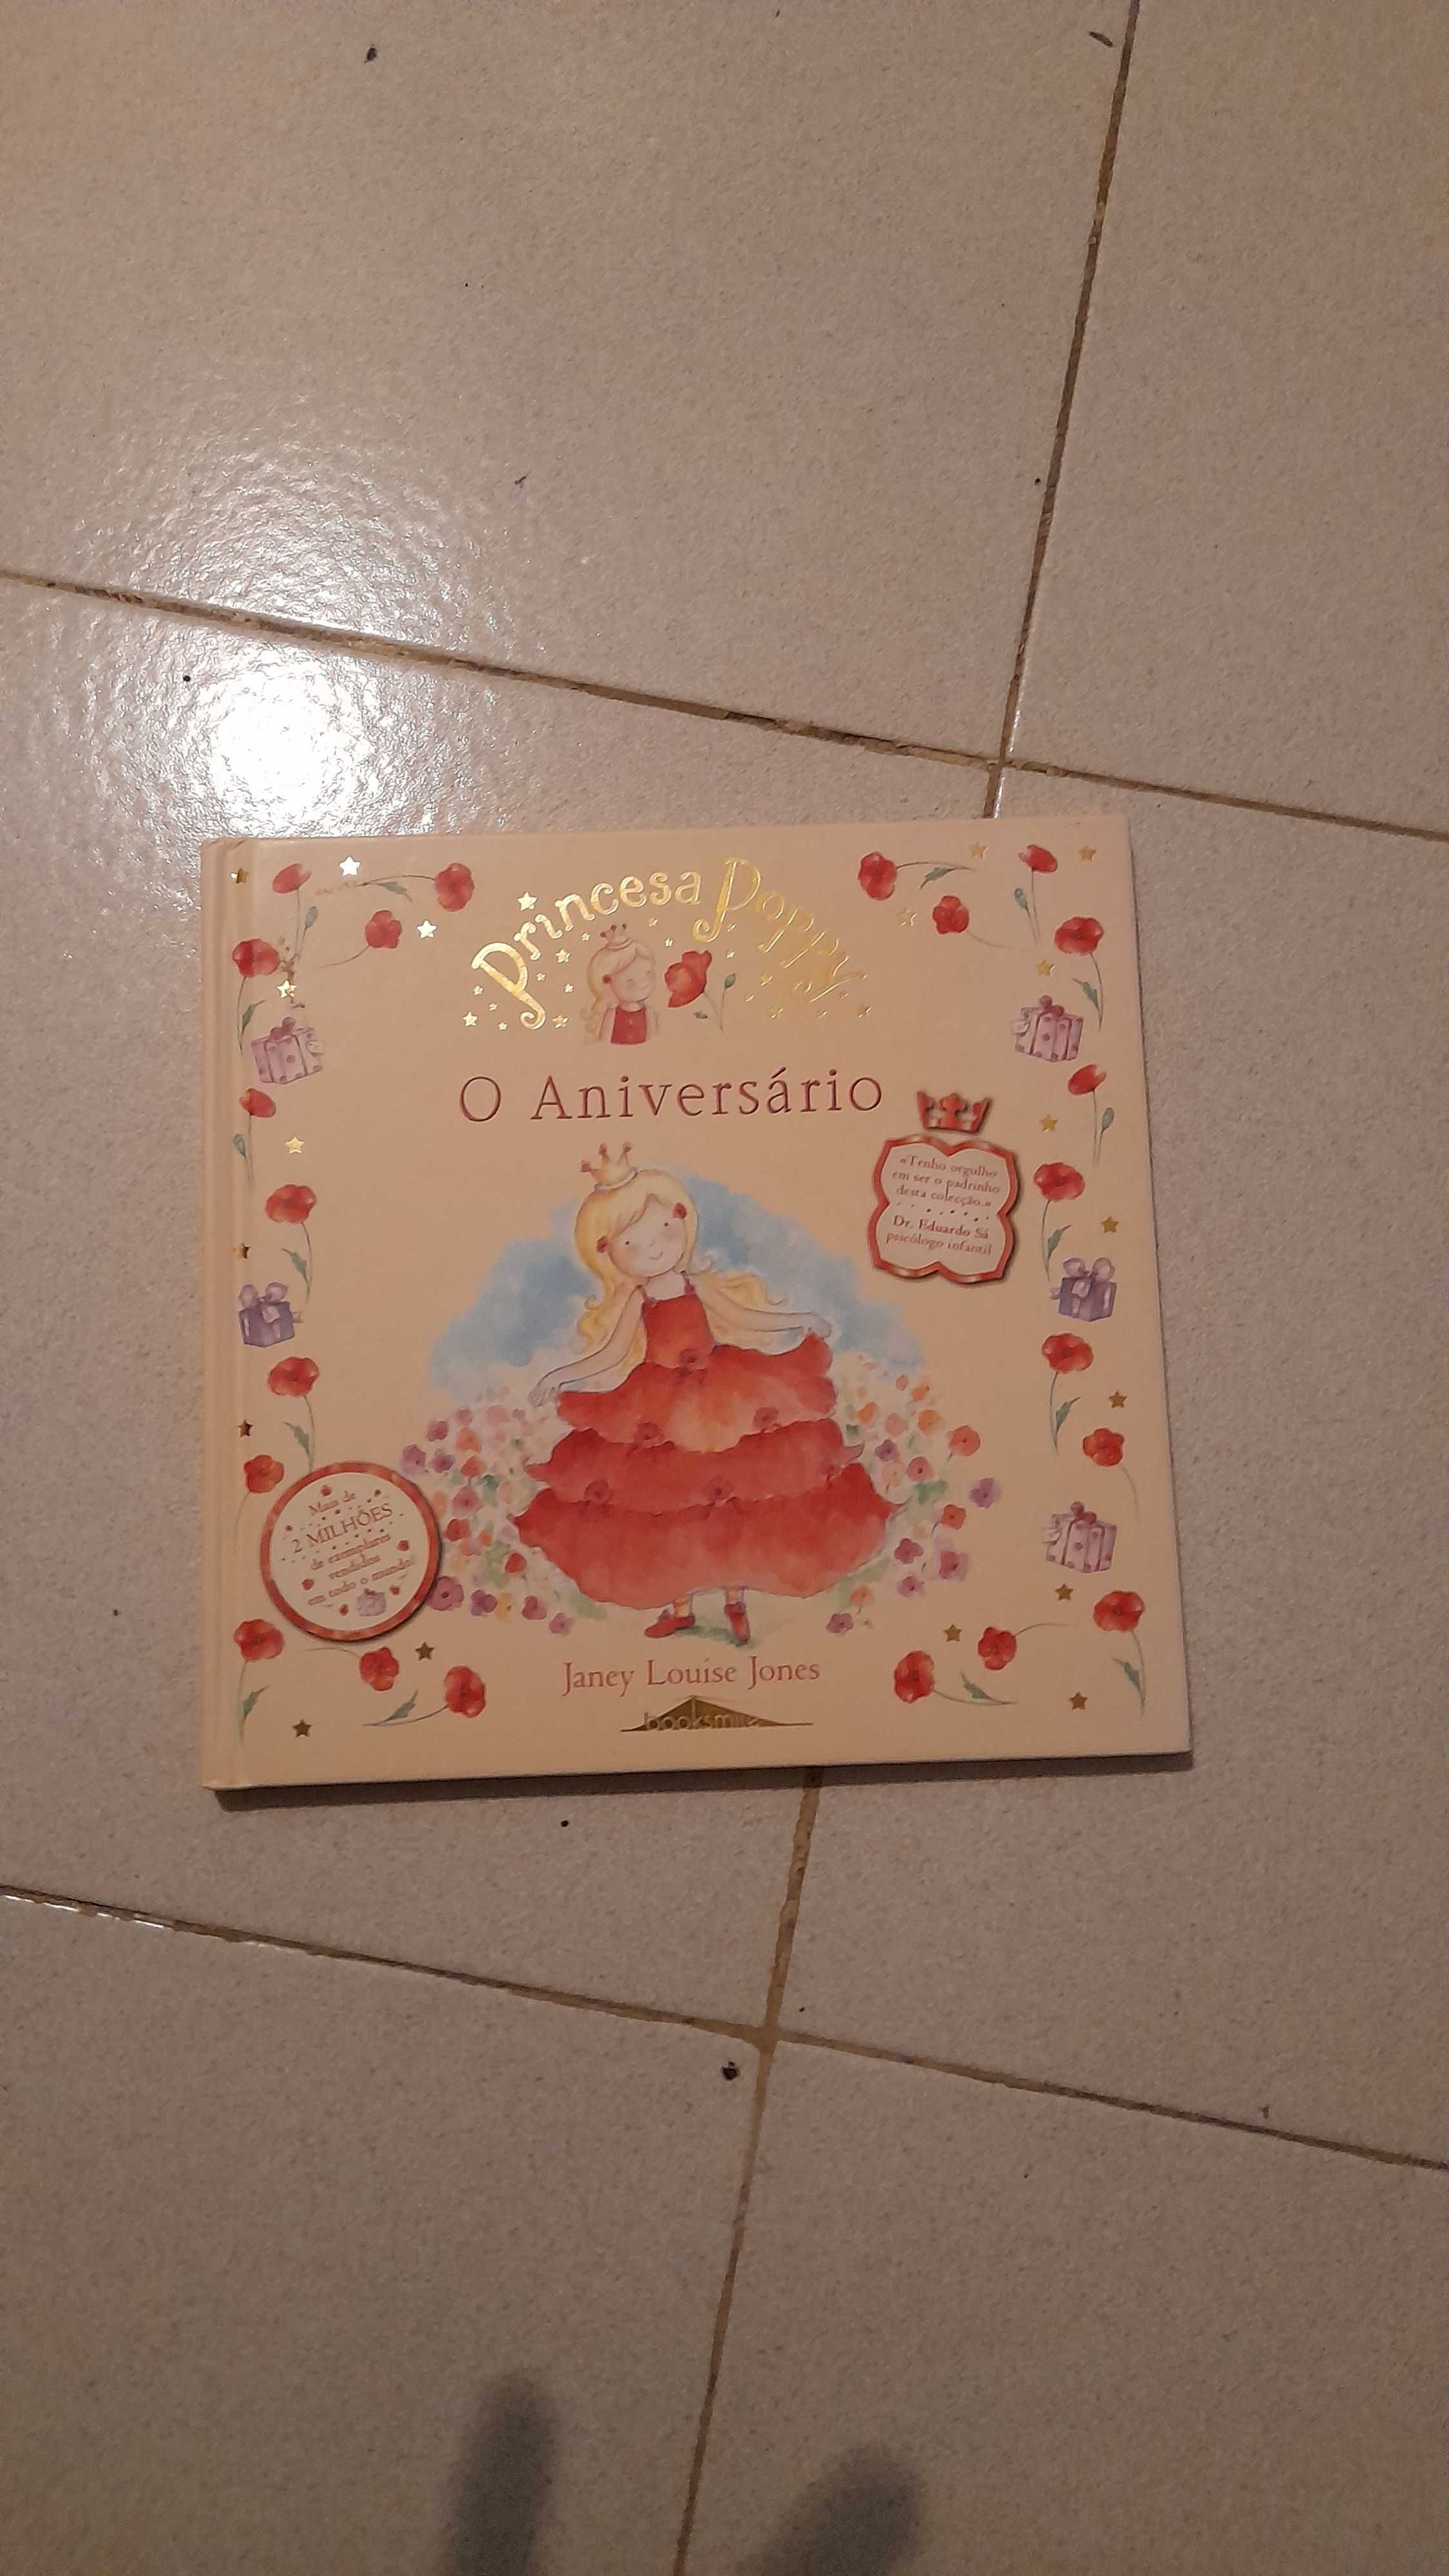 Livro Infantil Personalizado Eu Sou uma Princesa por um Dia